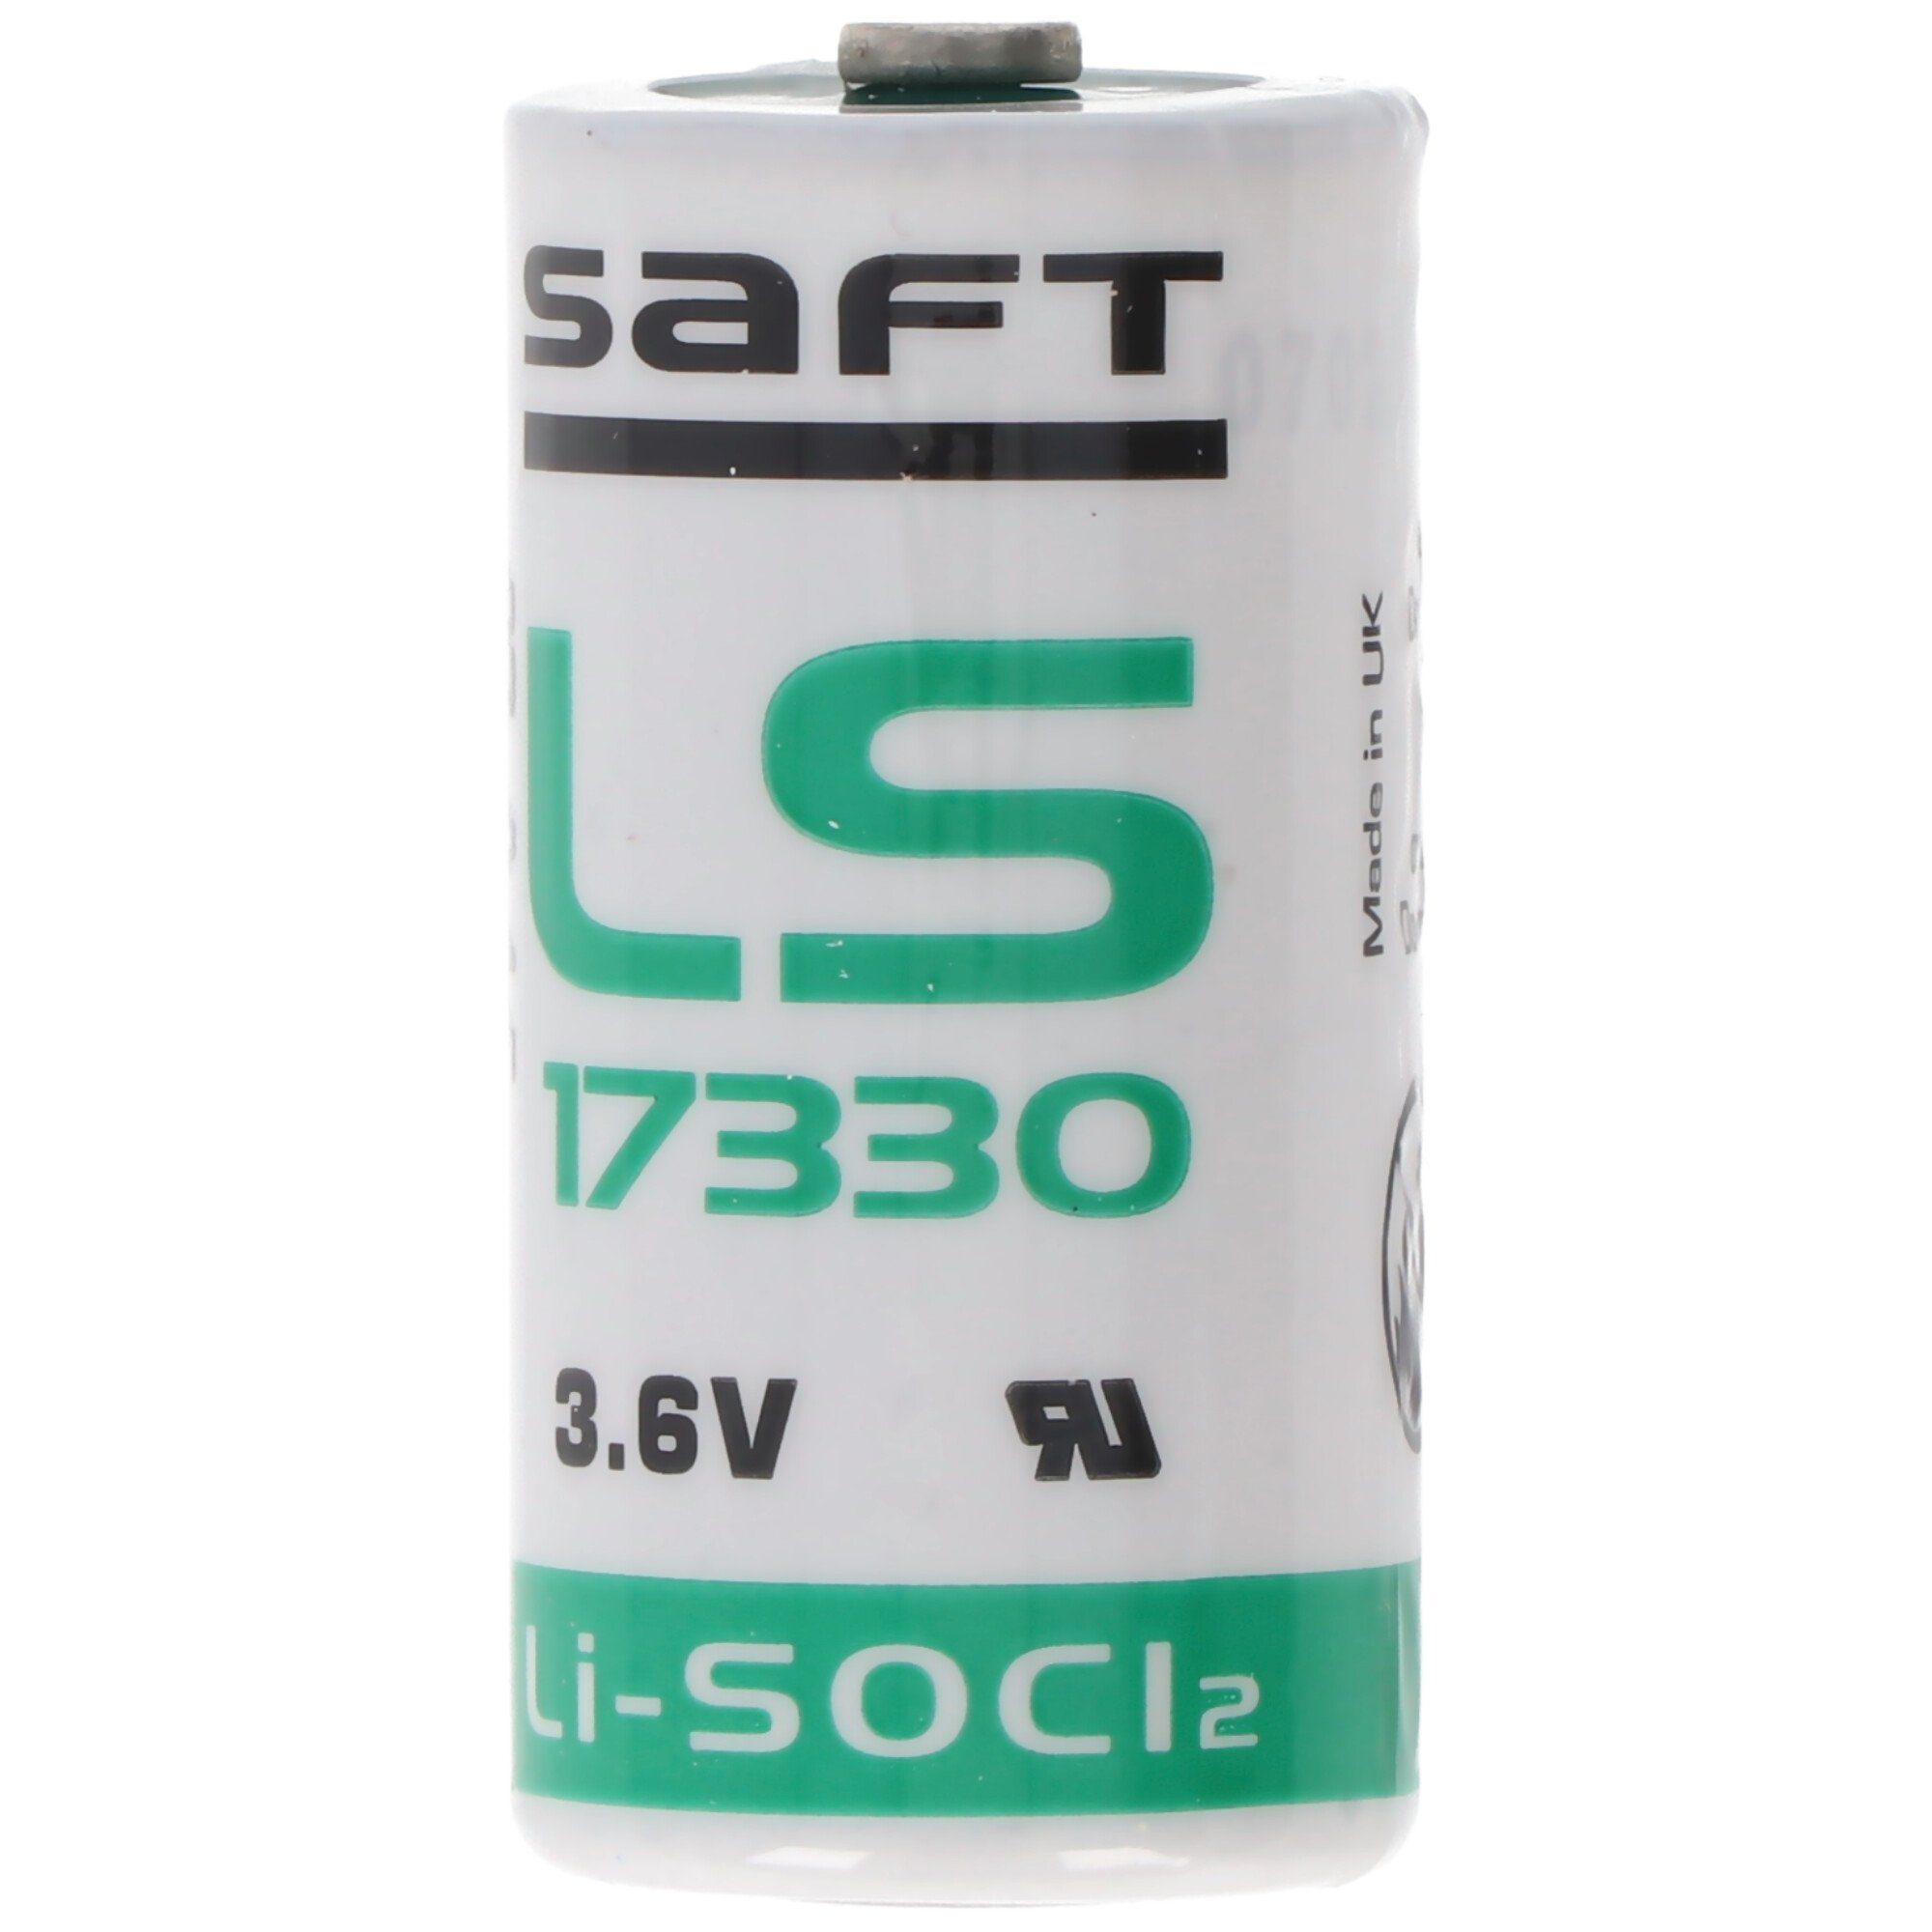 2,1 V) 3,6 (3,6 LS-17330 Batterie, V Ah Saft Lithium Saft